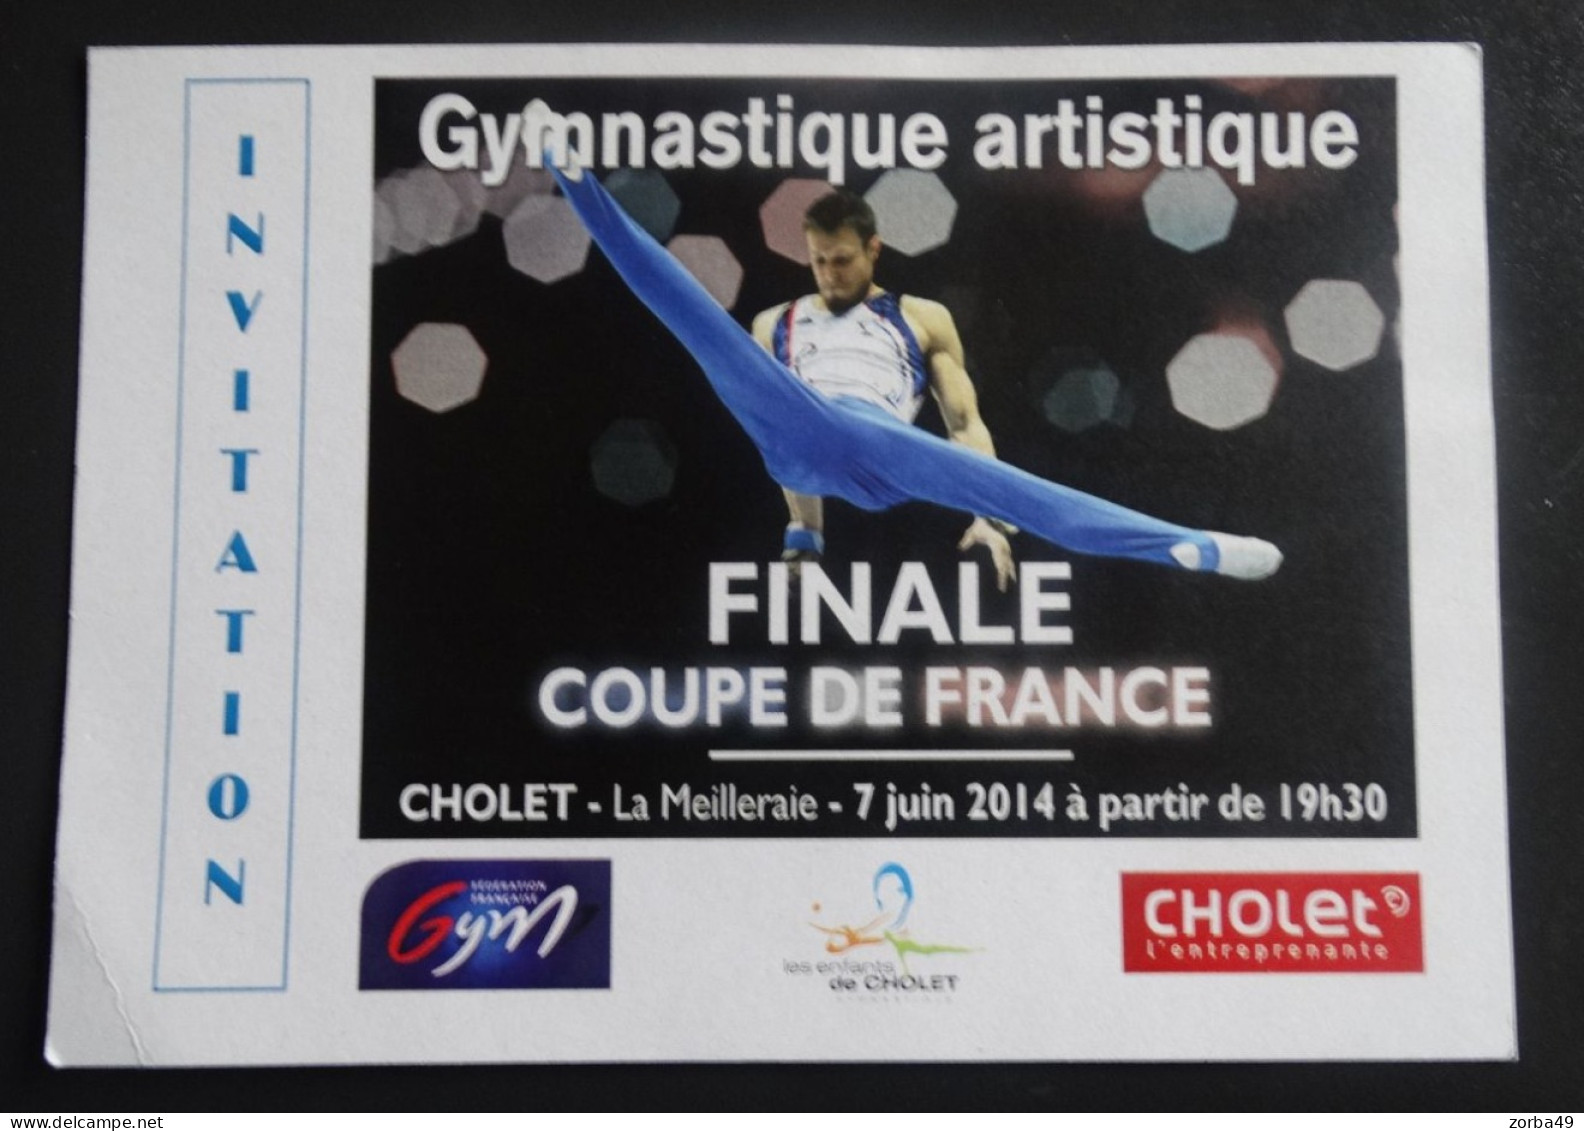 CHOLET Invitation Finale Coupe De France De Gymnastique Artistique 2014 - Gimnasia